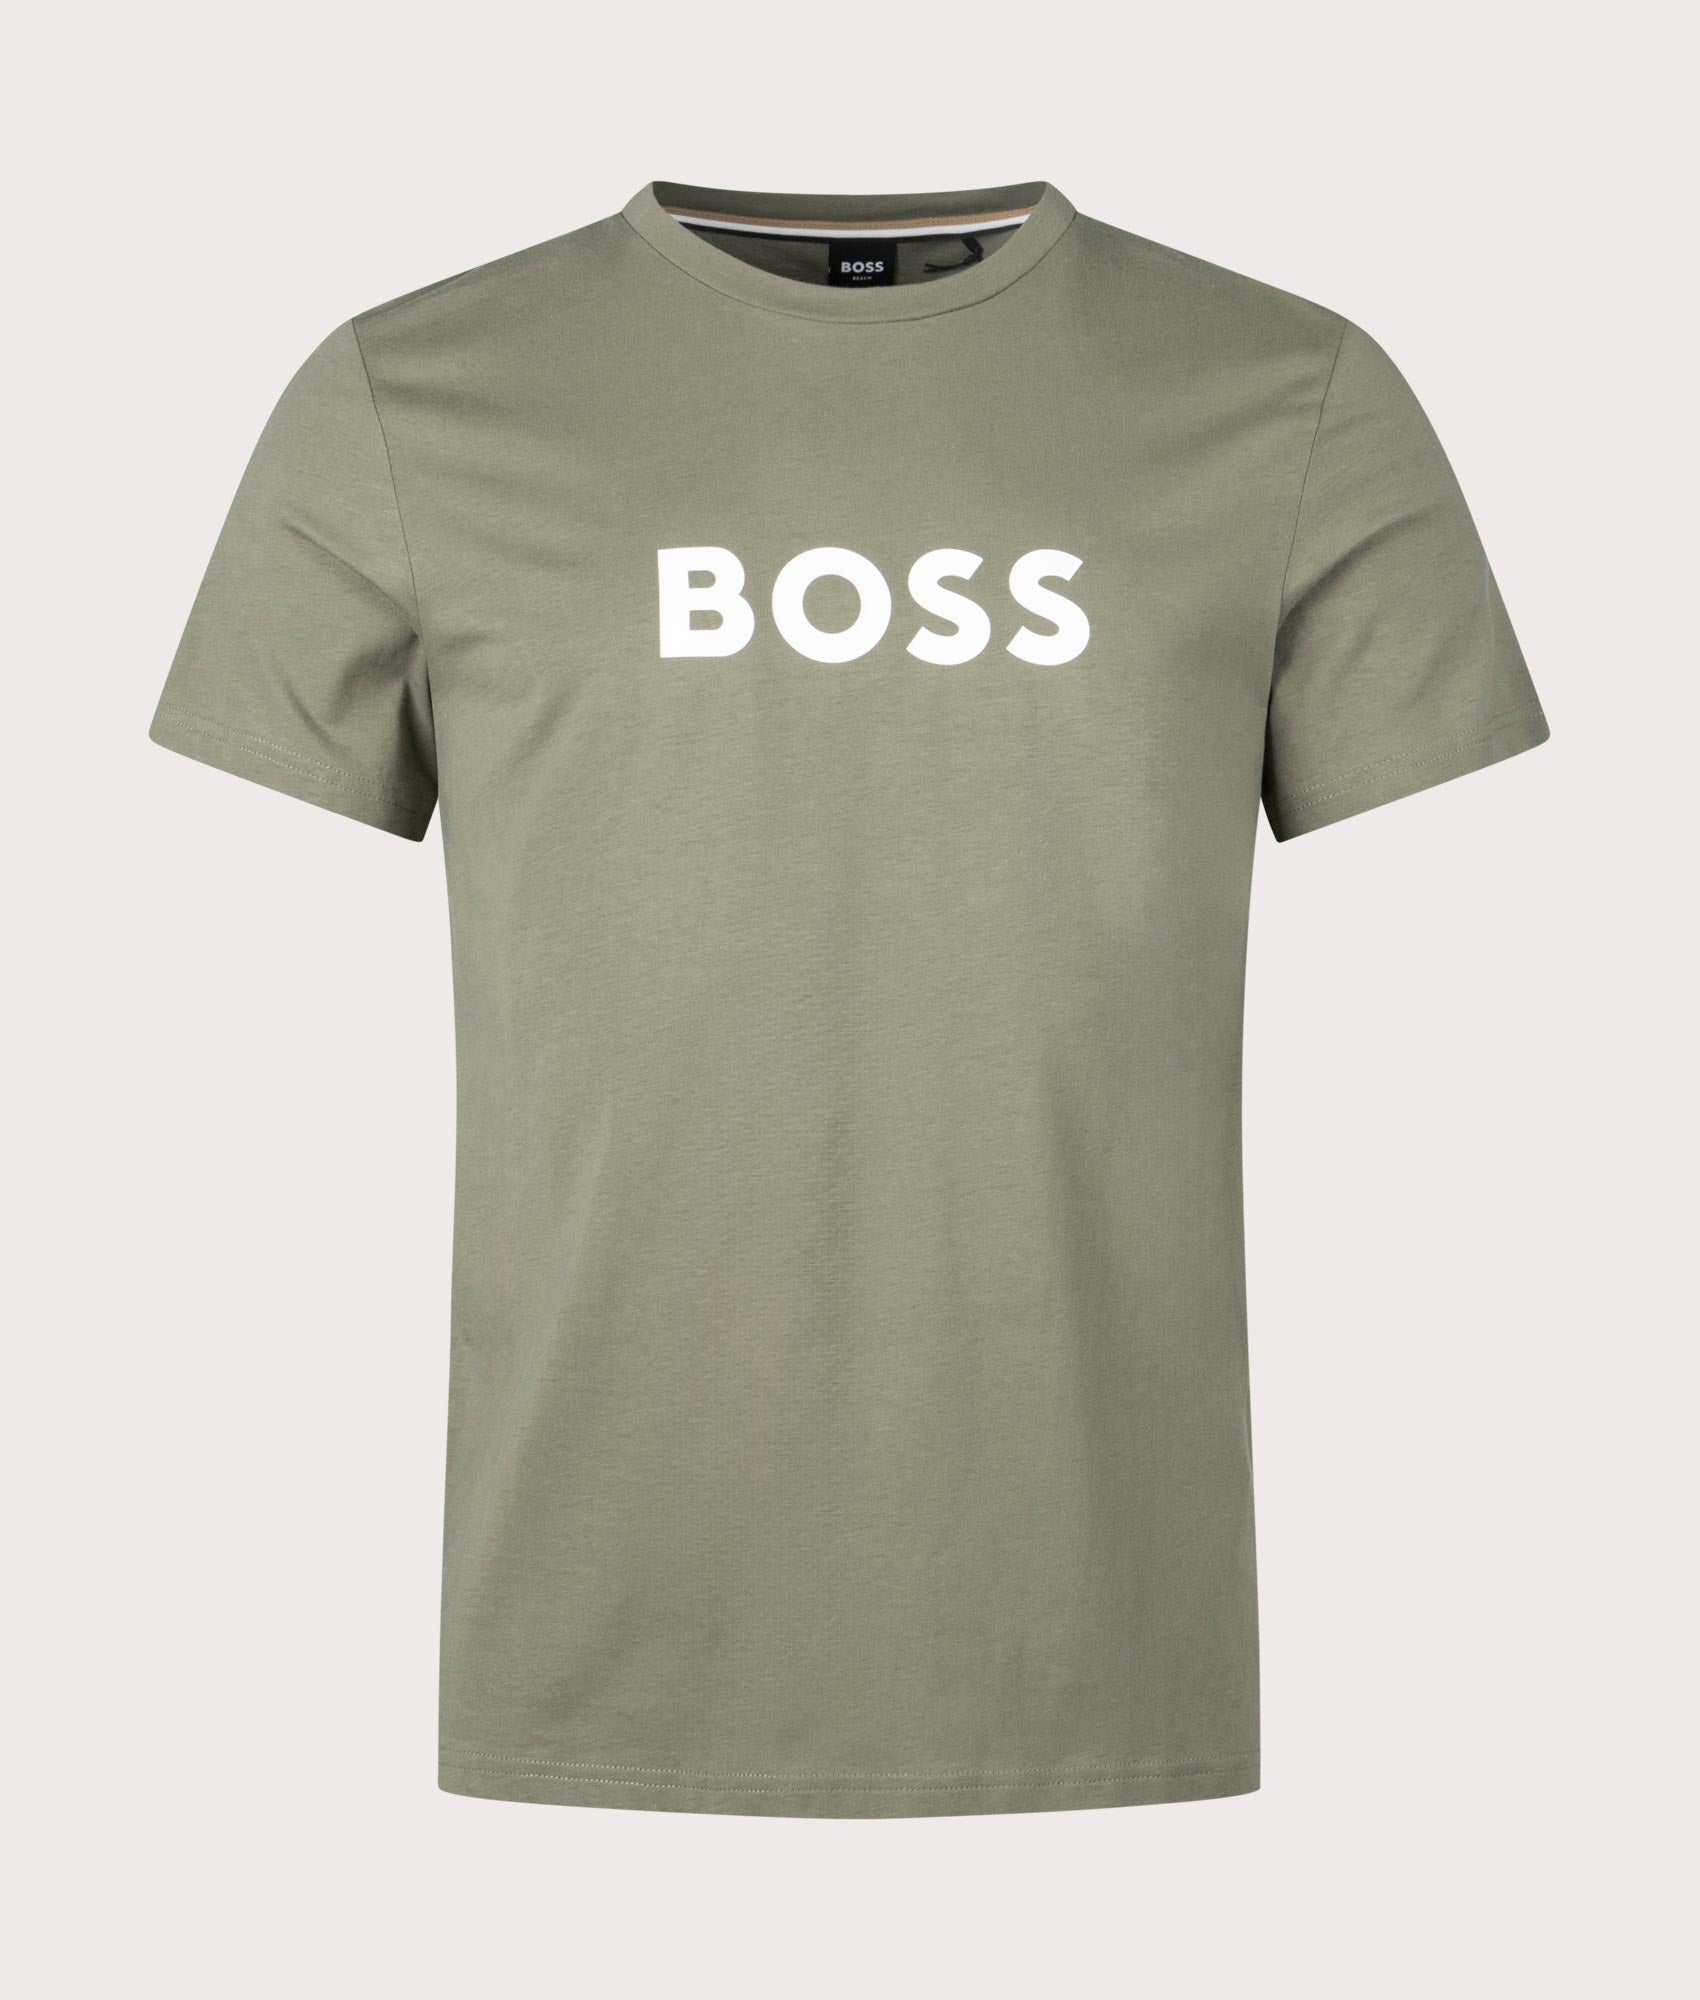 BOSS Mens Round Neck T-Shirt - Colour: 250 Beige/Khaki - Size: XL